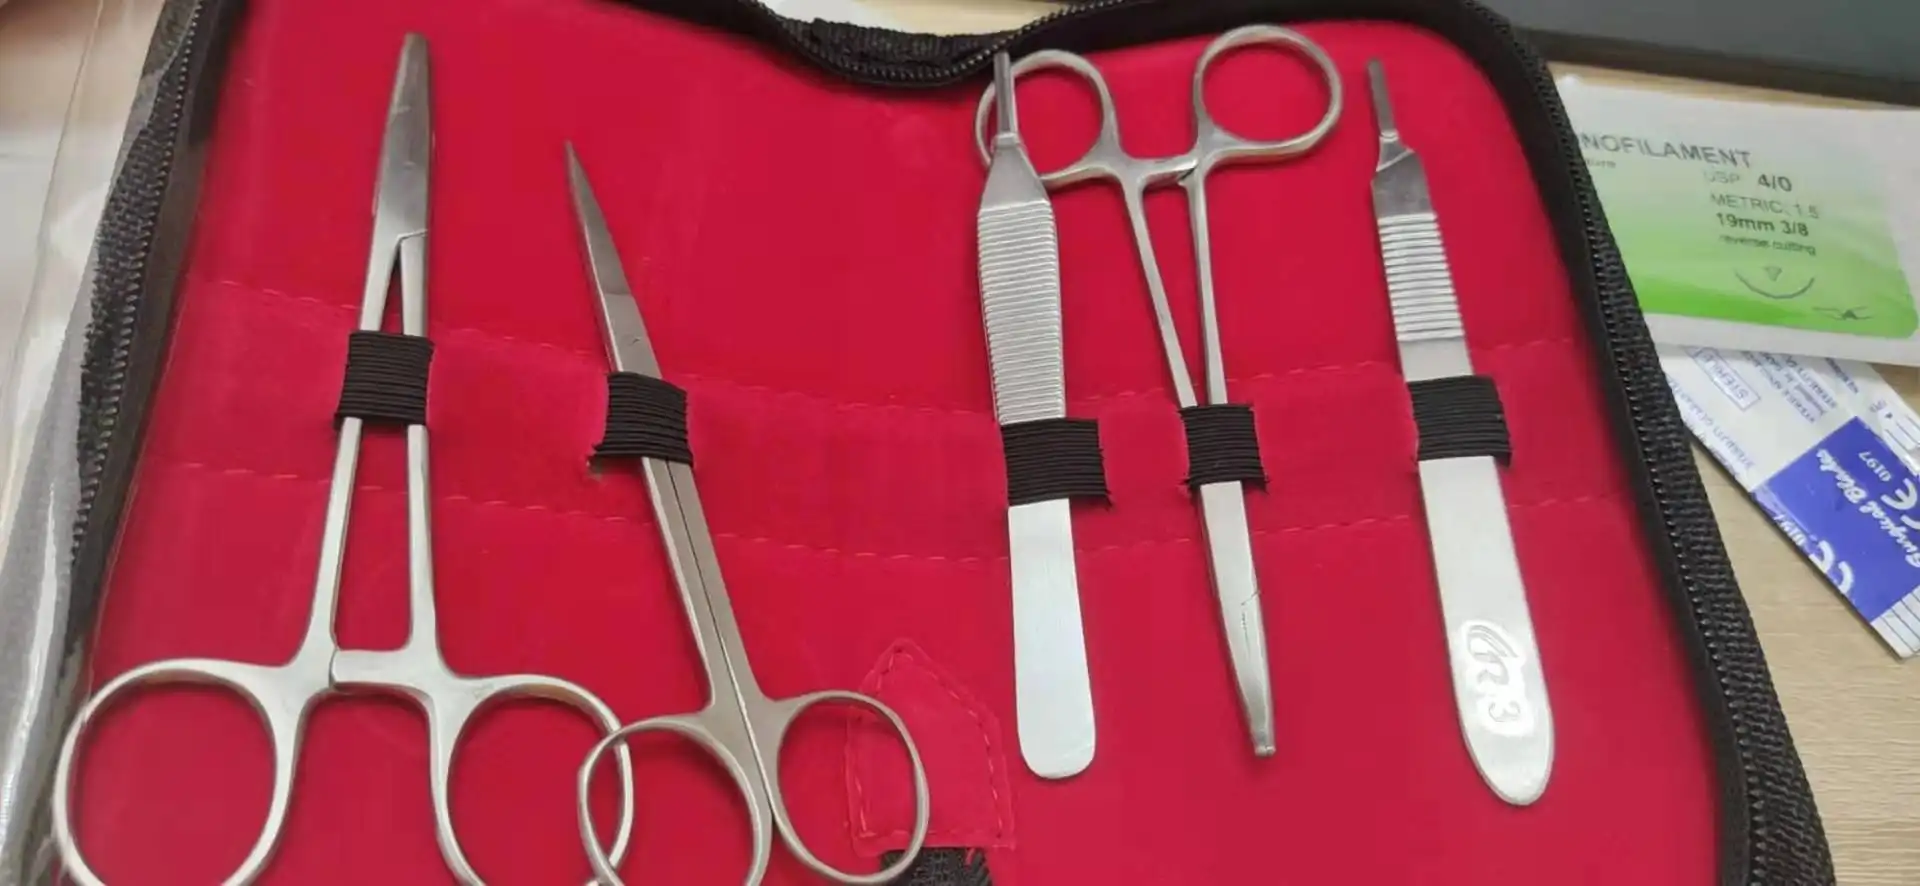 Kit de sutura quirúrgica, almohadilla de práctica de sutura urgital, productos de entrenamiento